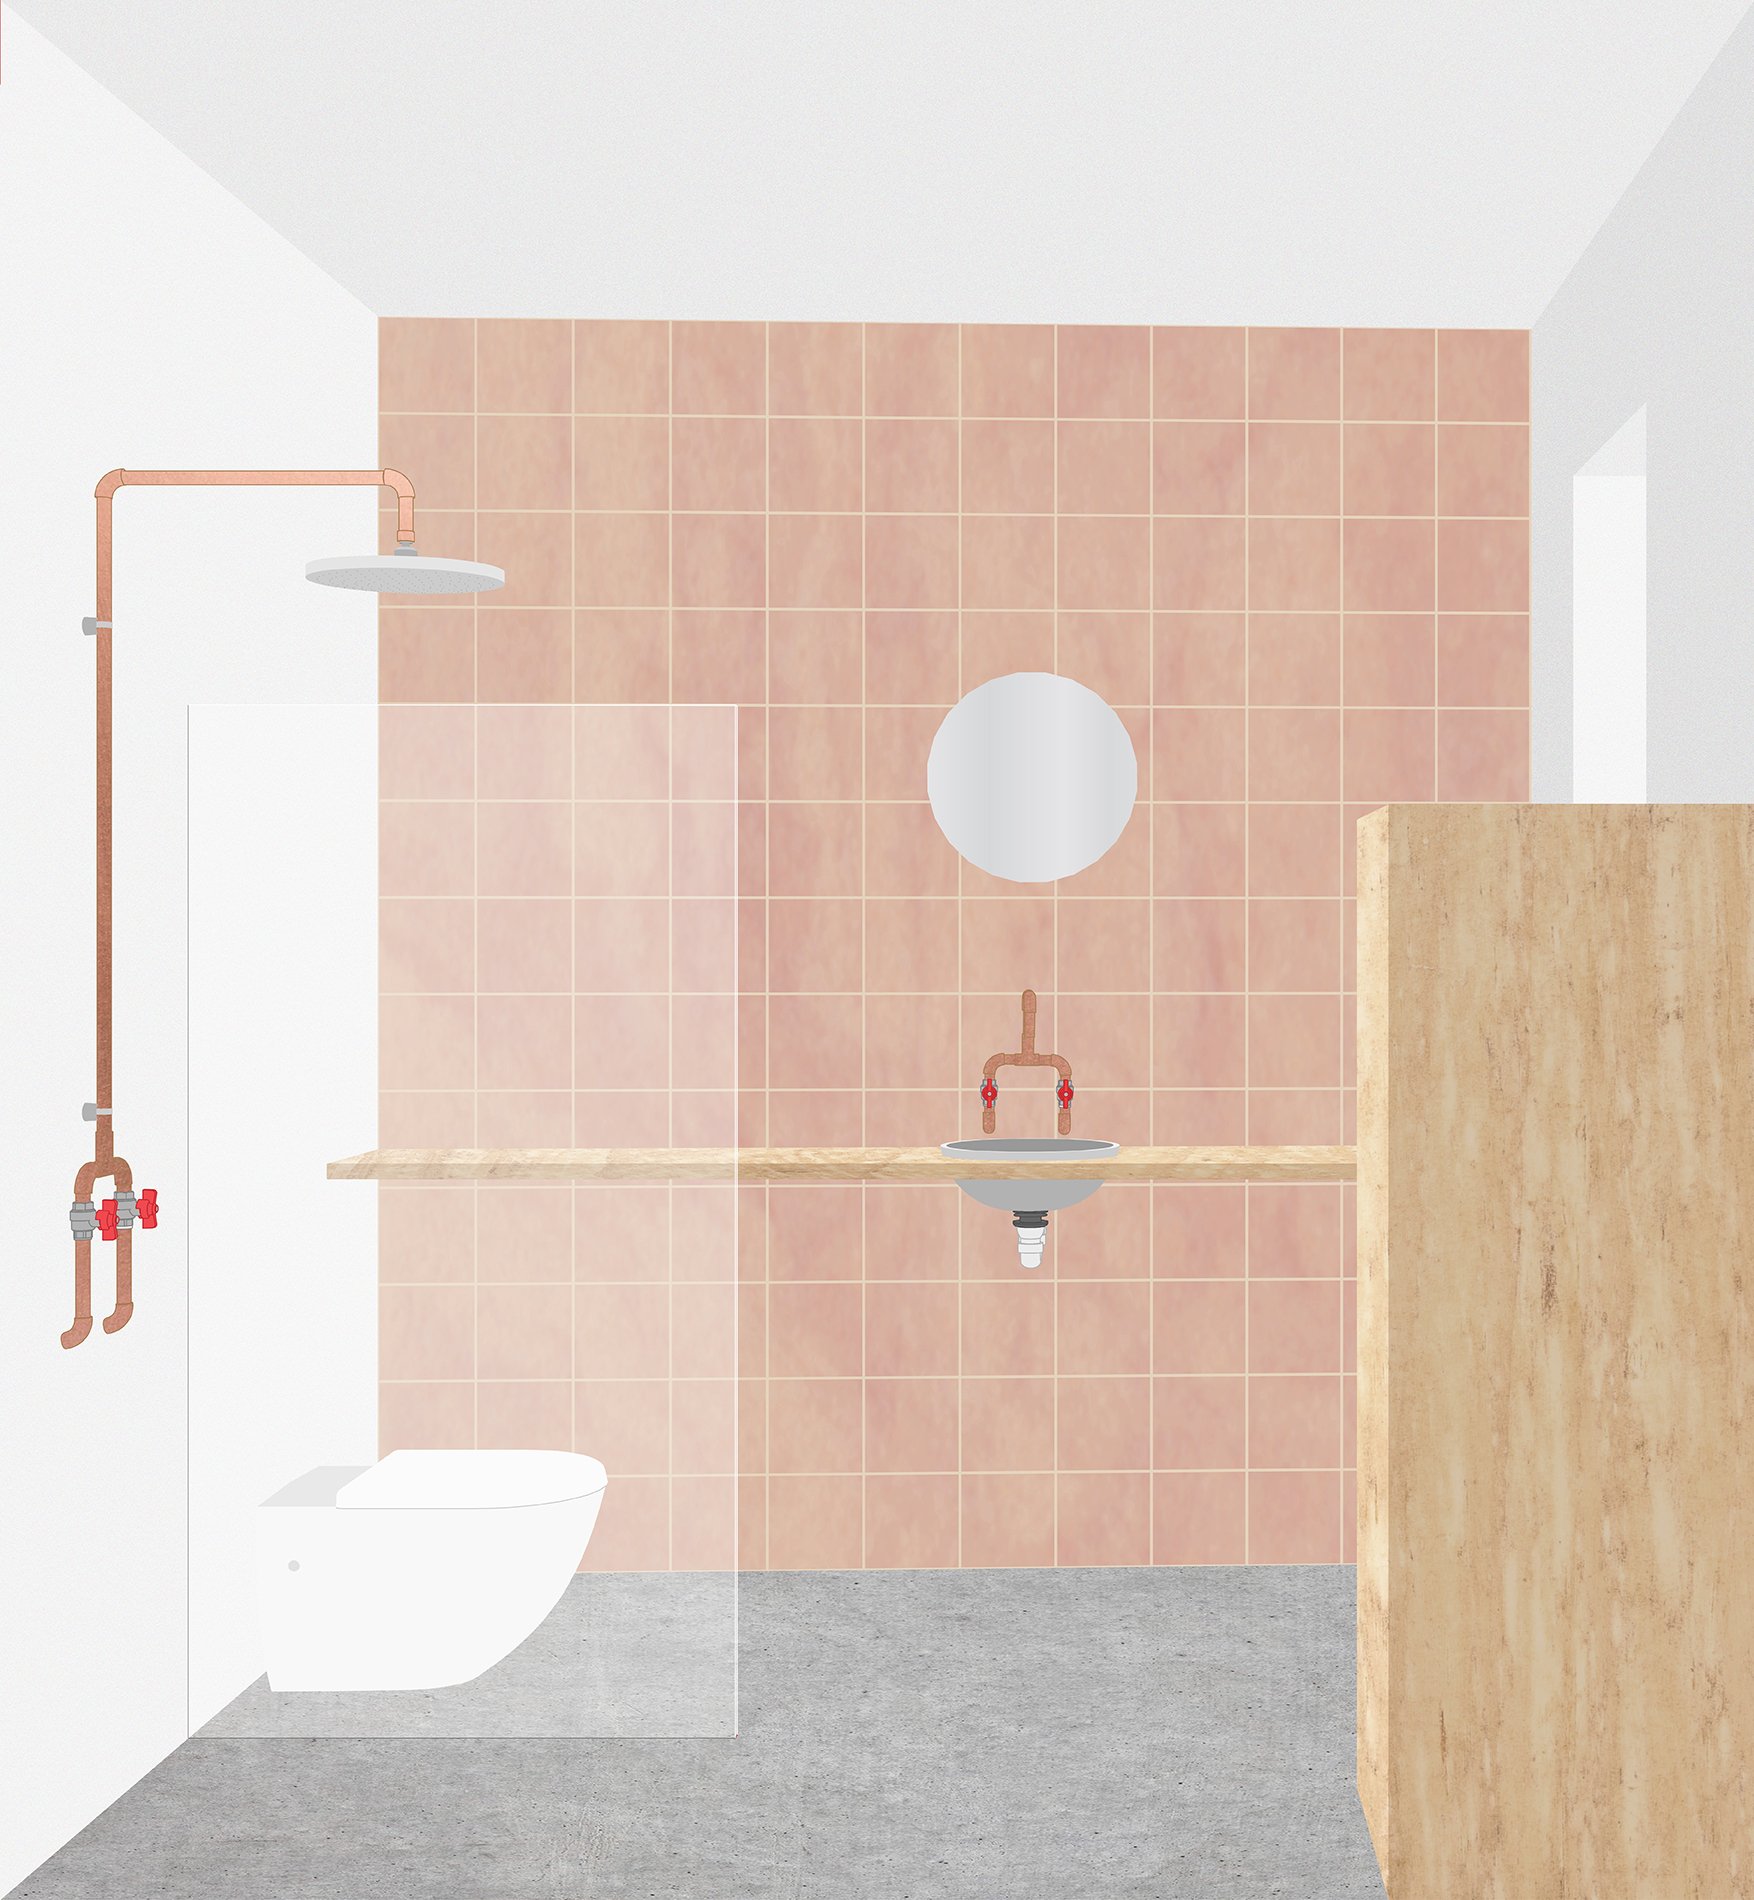 Kottage - Apartment 01 Presentation - Visualisation 4.jpg